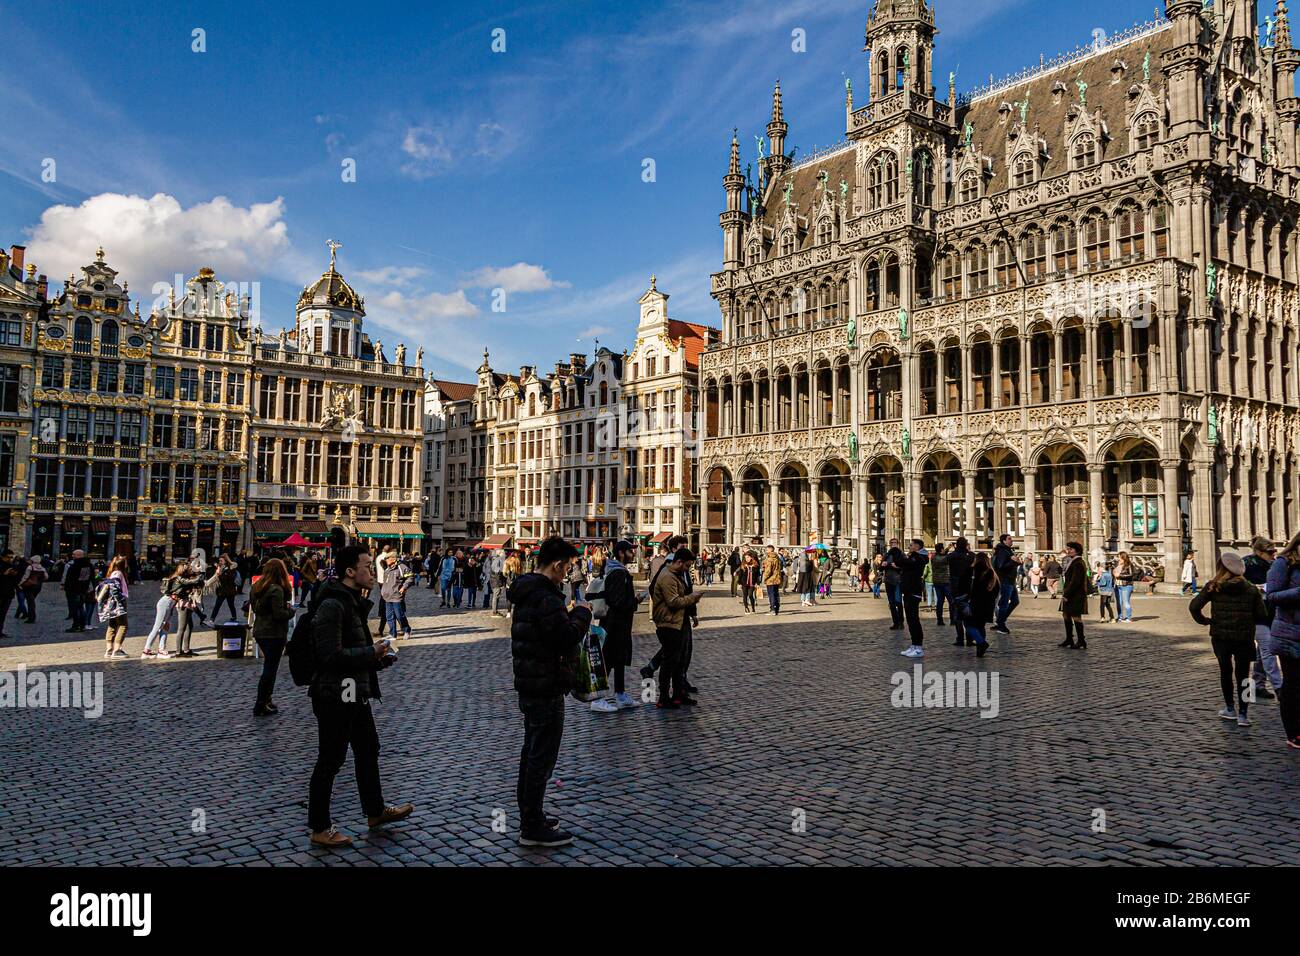 L'hotel de ville, o municipio, si trova nella Grand Place, la principale piazza pedonale del centro di Bruxelles, capitale del Belgio. Marzo 2019. Foto Stock